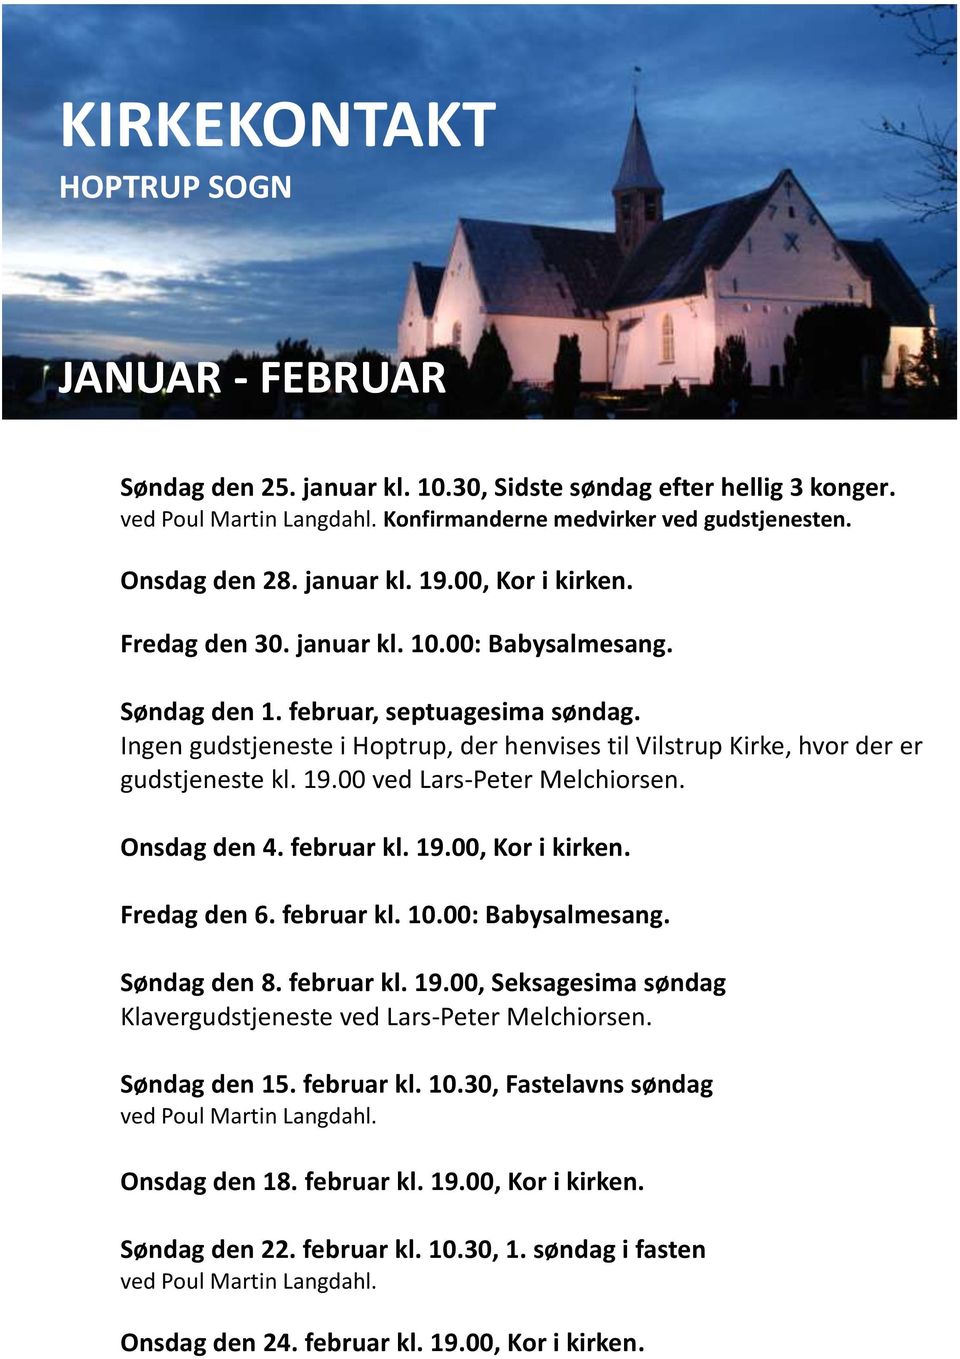 Ingen gudstjeneste i Hoptrup, der henvises til Vilstrup Kirke, hvor der er gudstjeneste kl. 19.00 ved Lars-Peter Melchiorsen. Onsdag den 4. februar kl. 19.00, Kor i kirken. Fredag den 6. februar kl. 10.